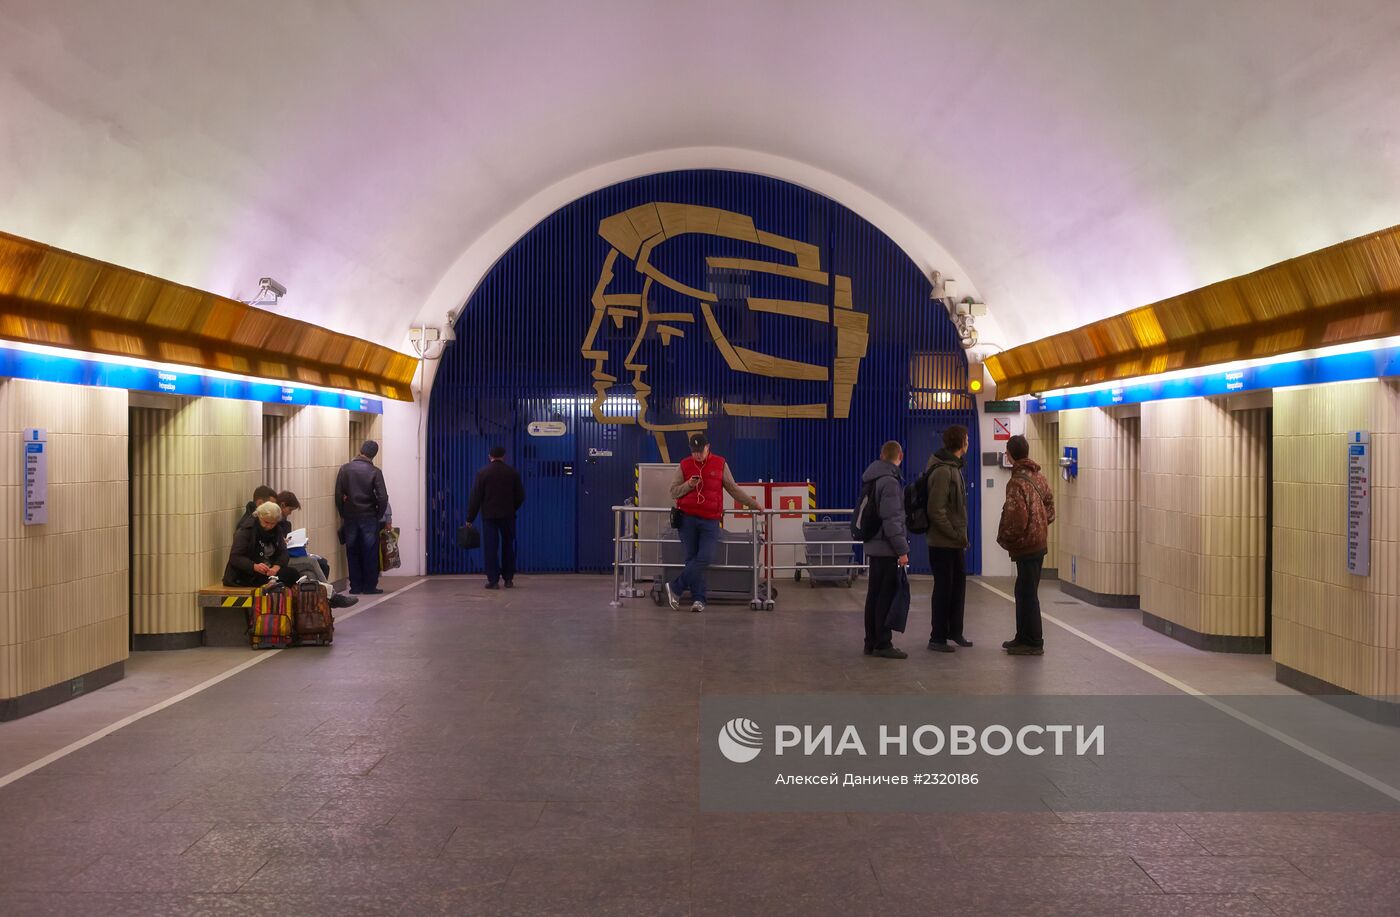 Открытие станции метро "Петроградская" после капитального ремонта